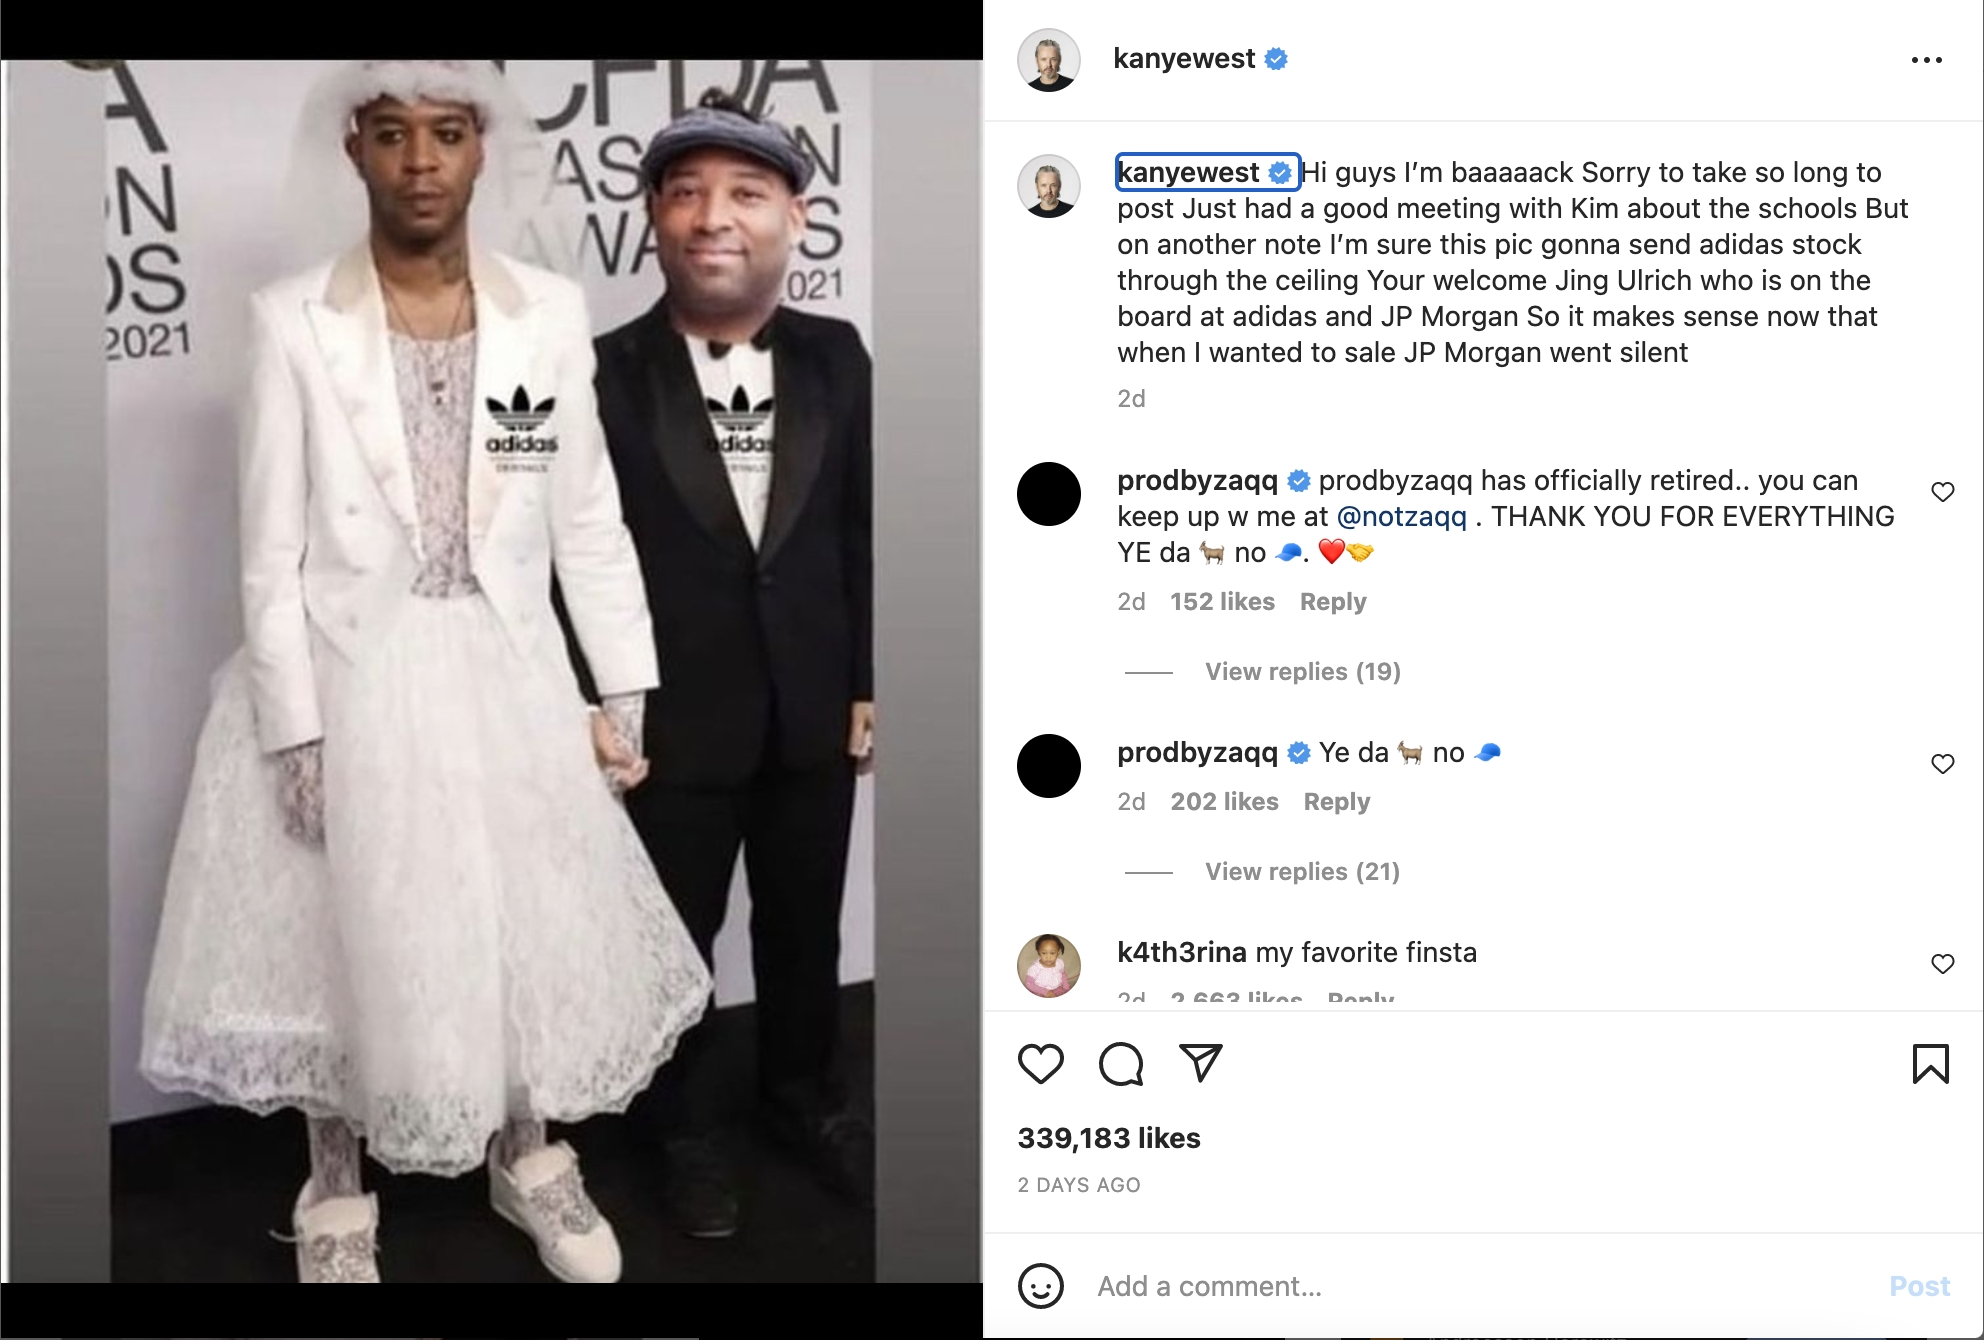 kanye west adidas feud kid cudi w photoshop